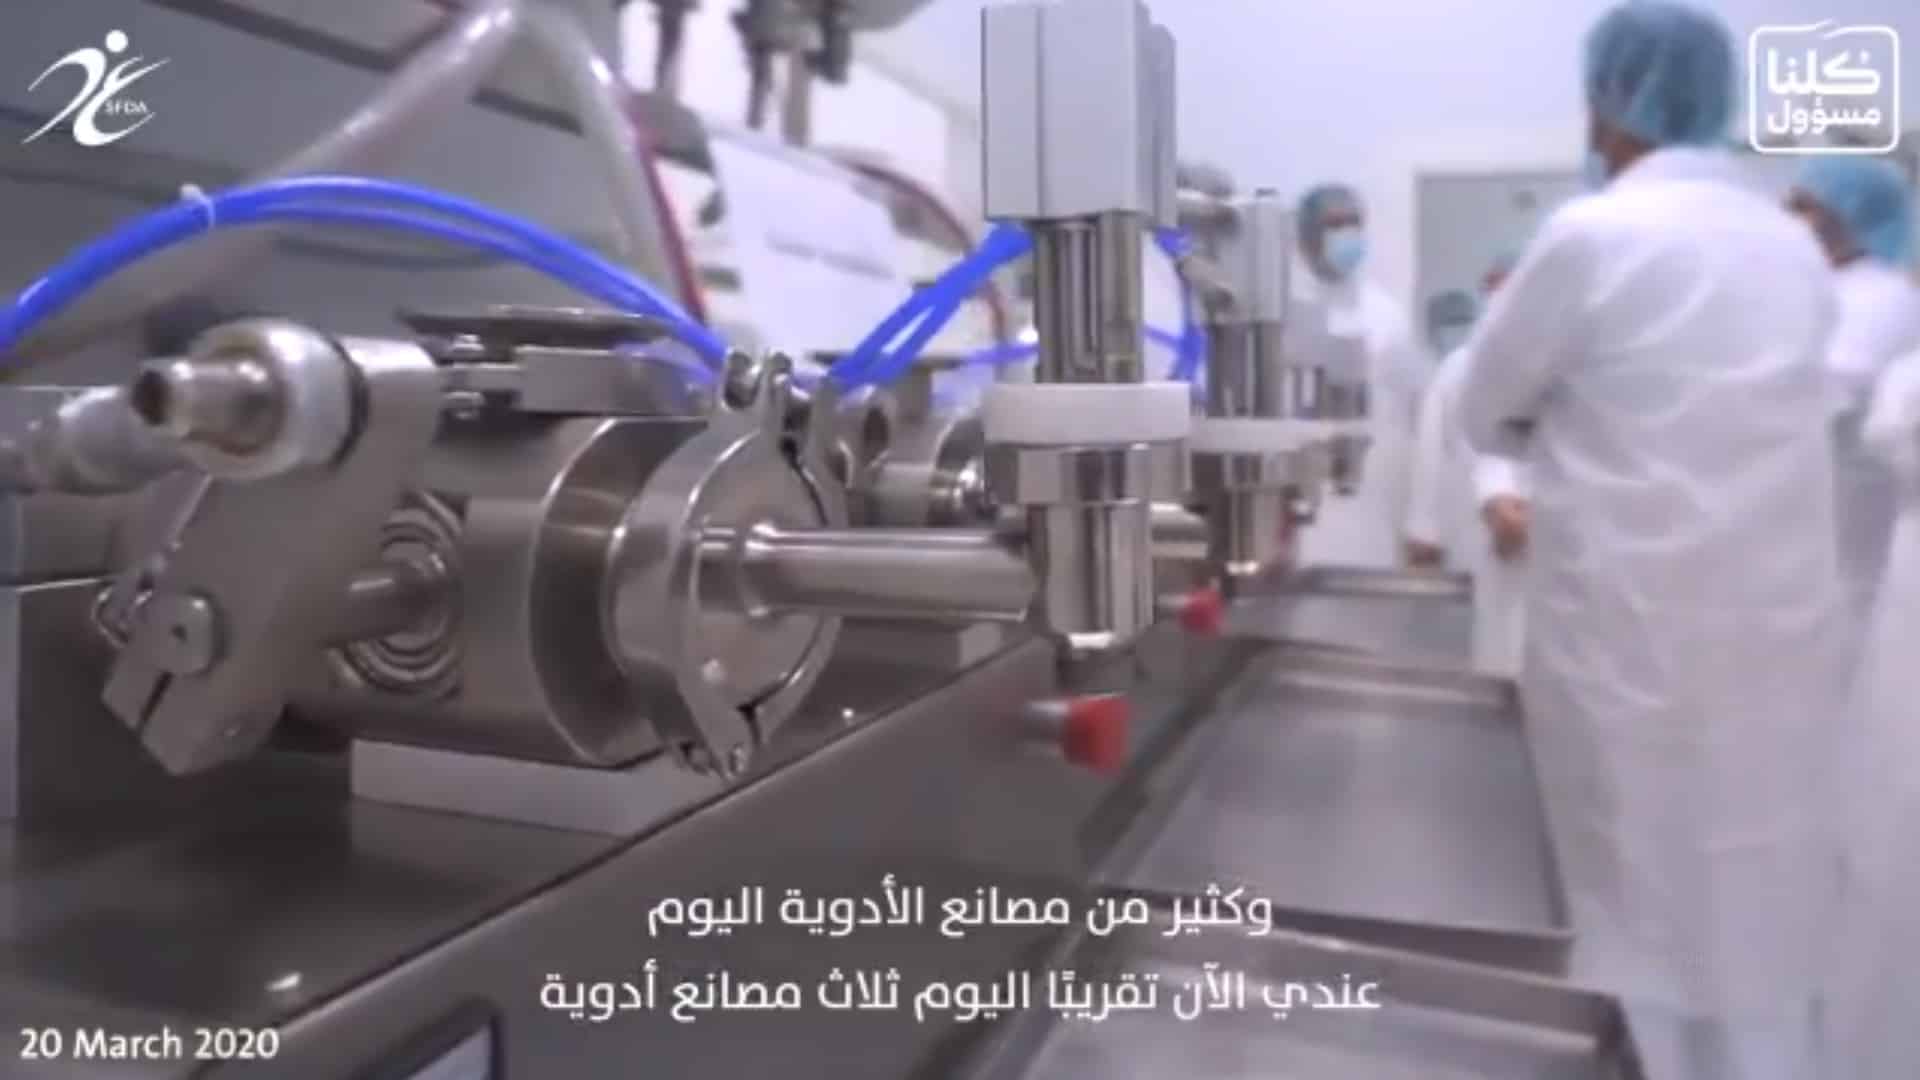 فيديو.. أكثر من 30 مصنعًا للمعقمات في المملكة منذ أزمة كورونا